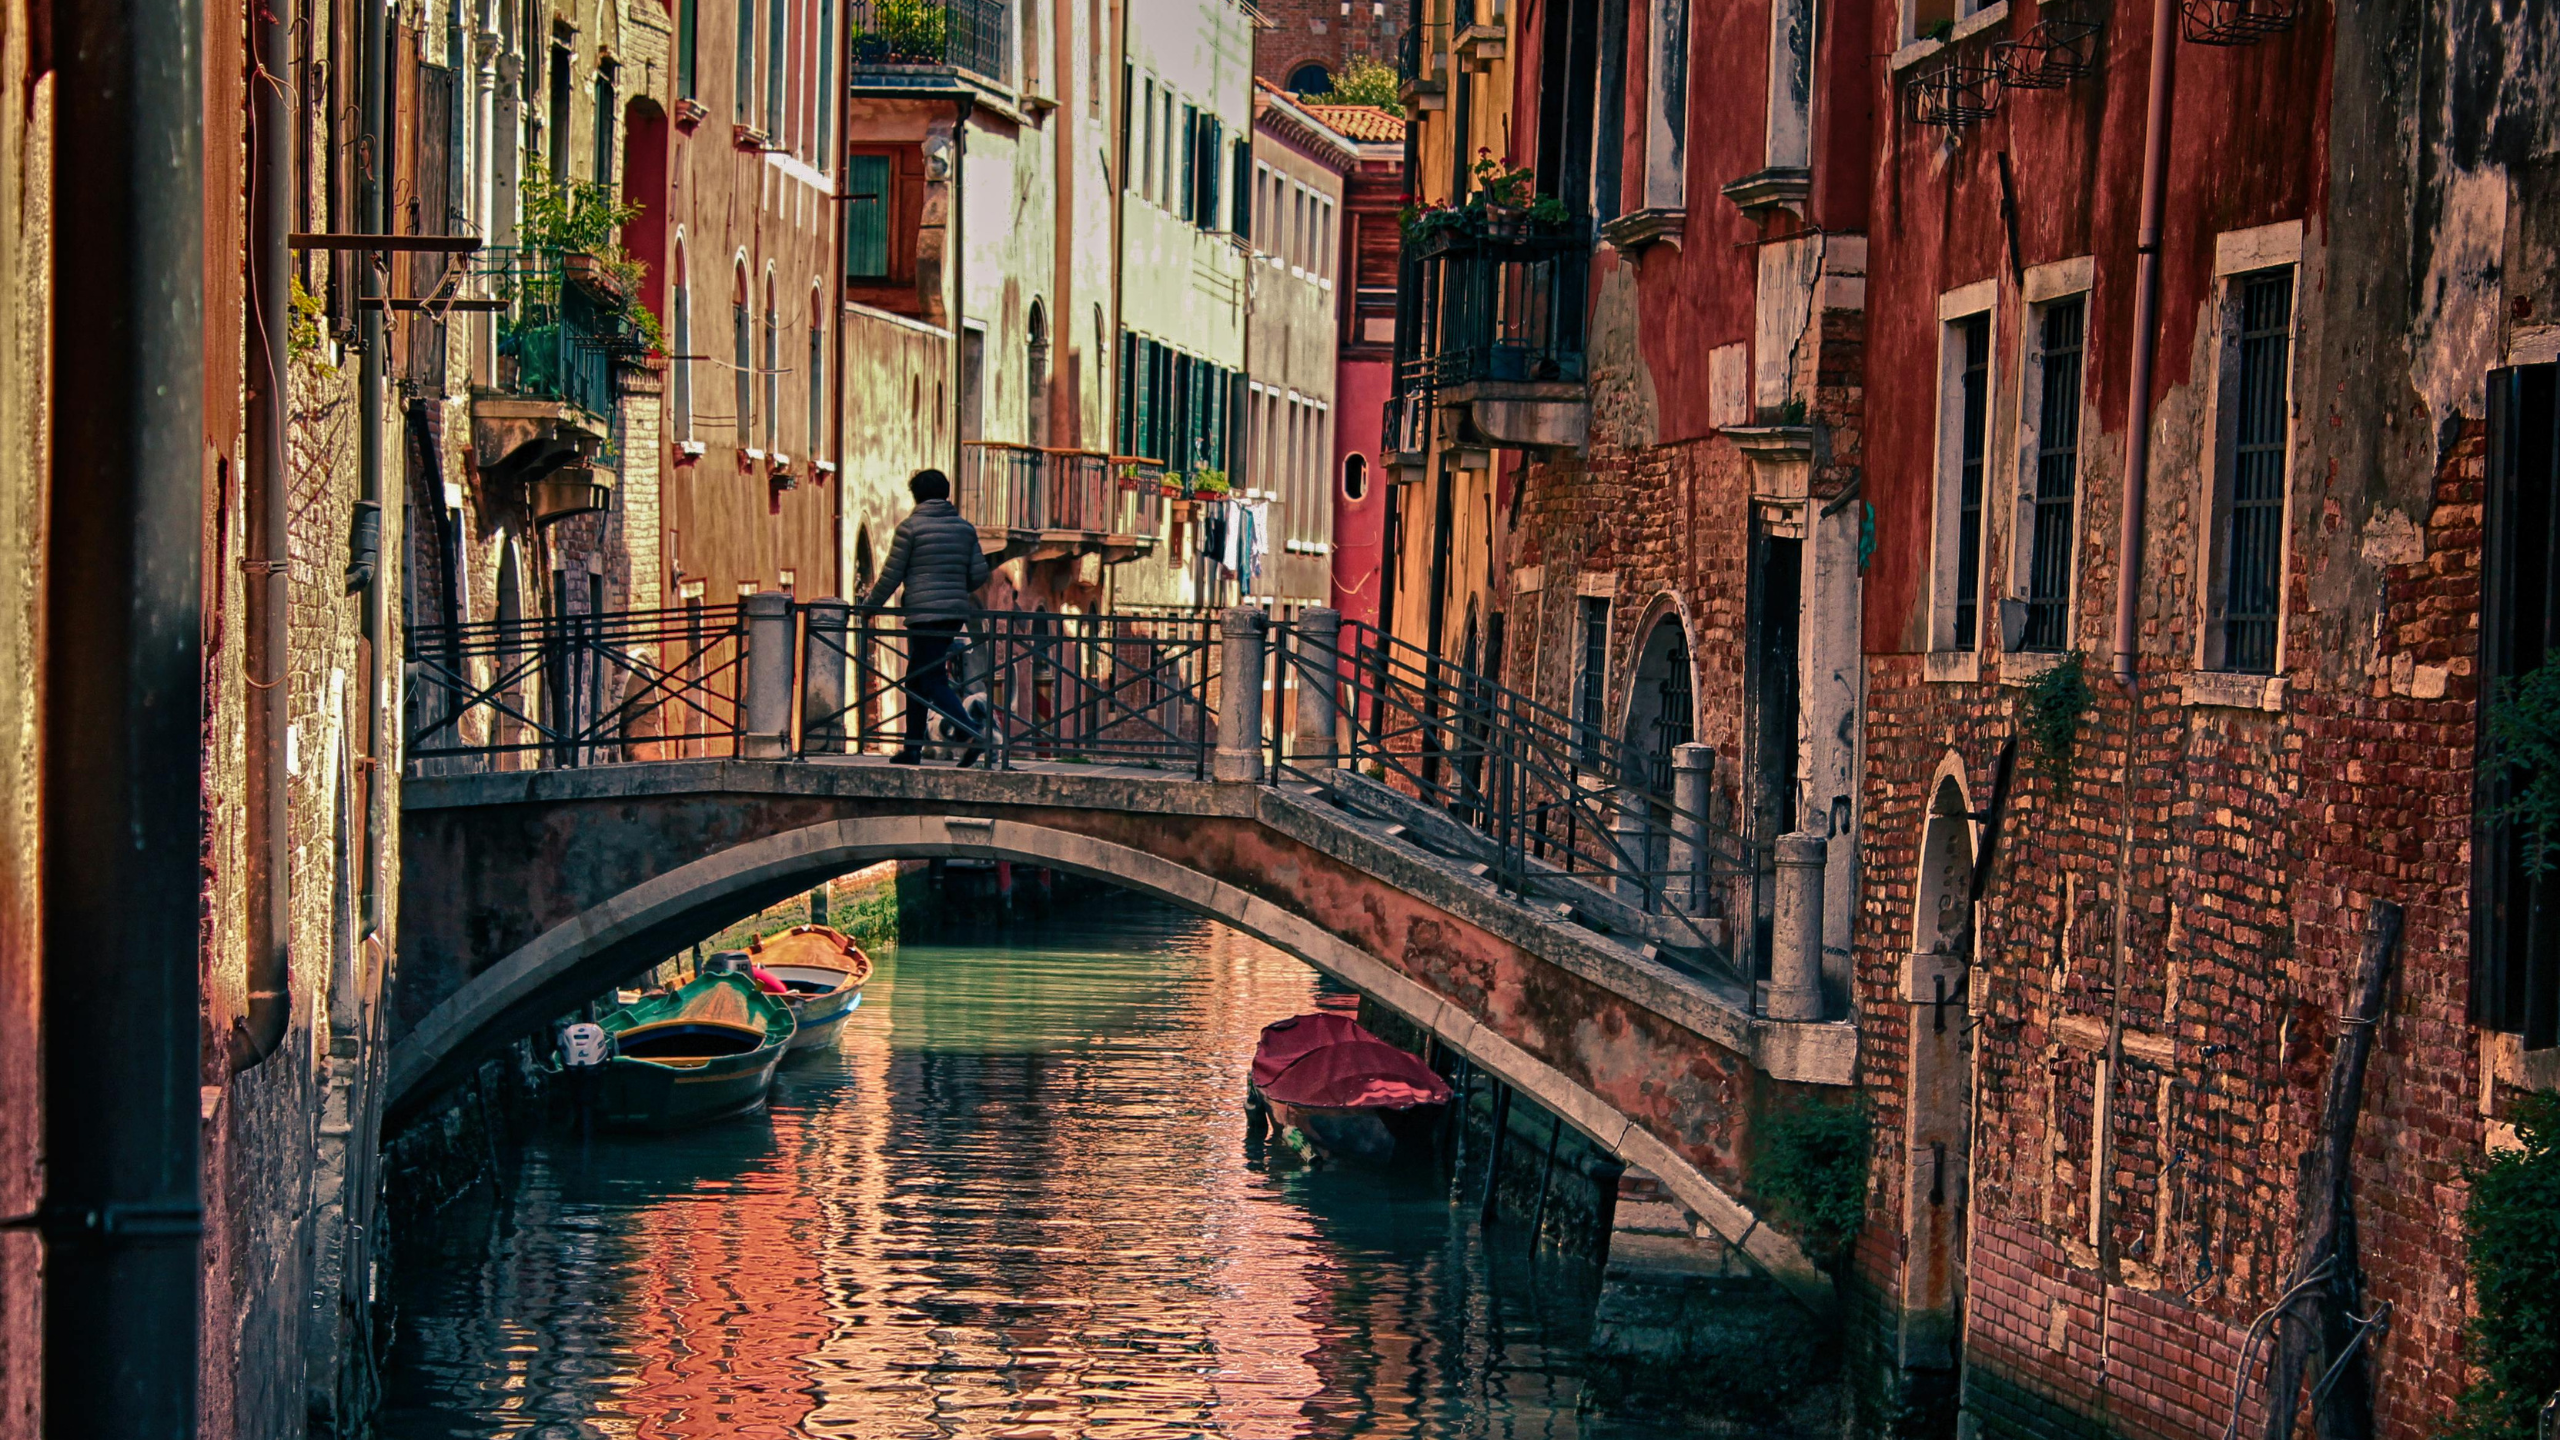 Venise facture aux touristes un droit d’entrée de 5 €, voici comment vous pouvez en être exempté